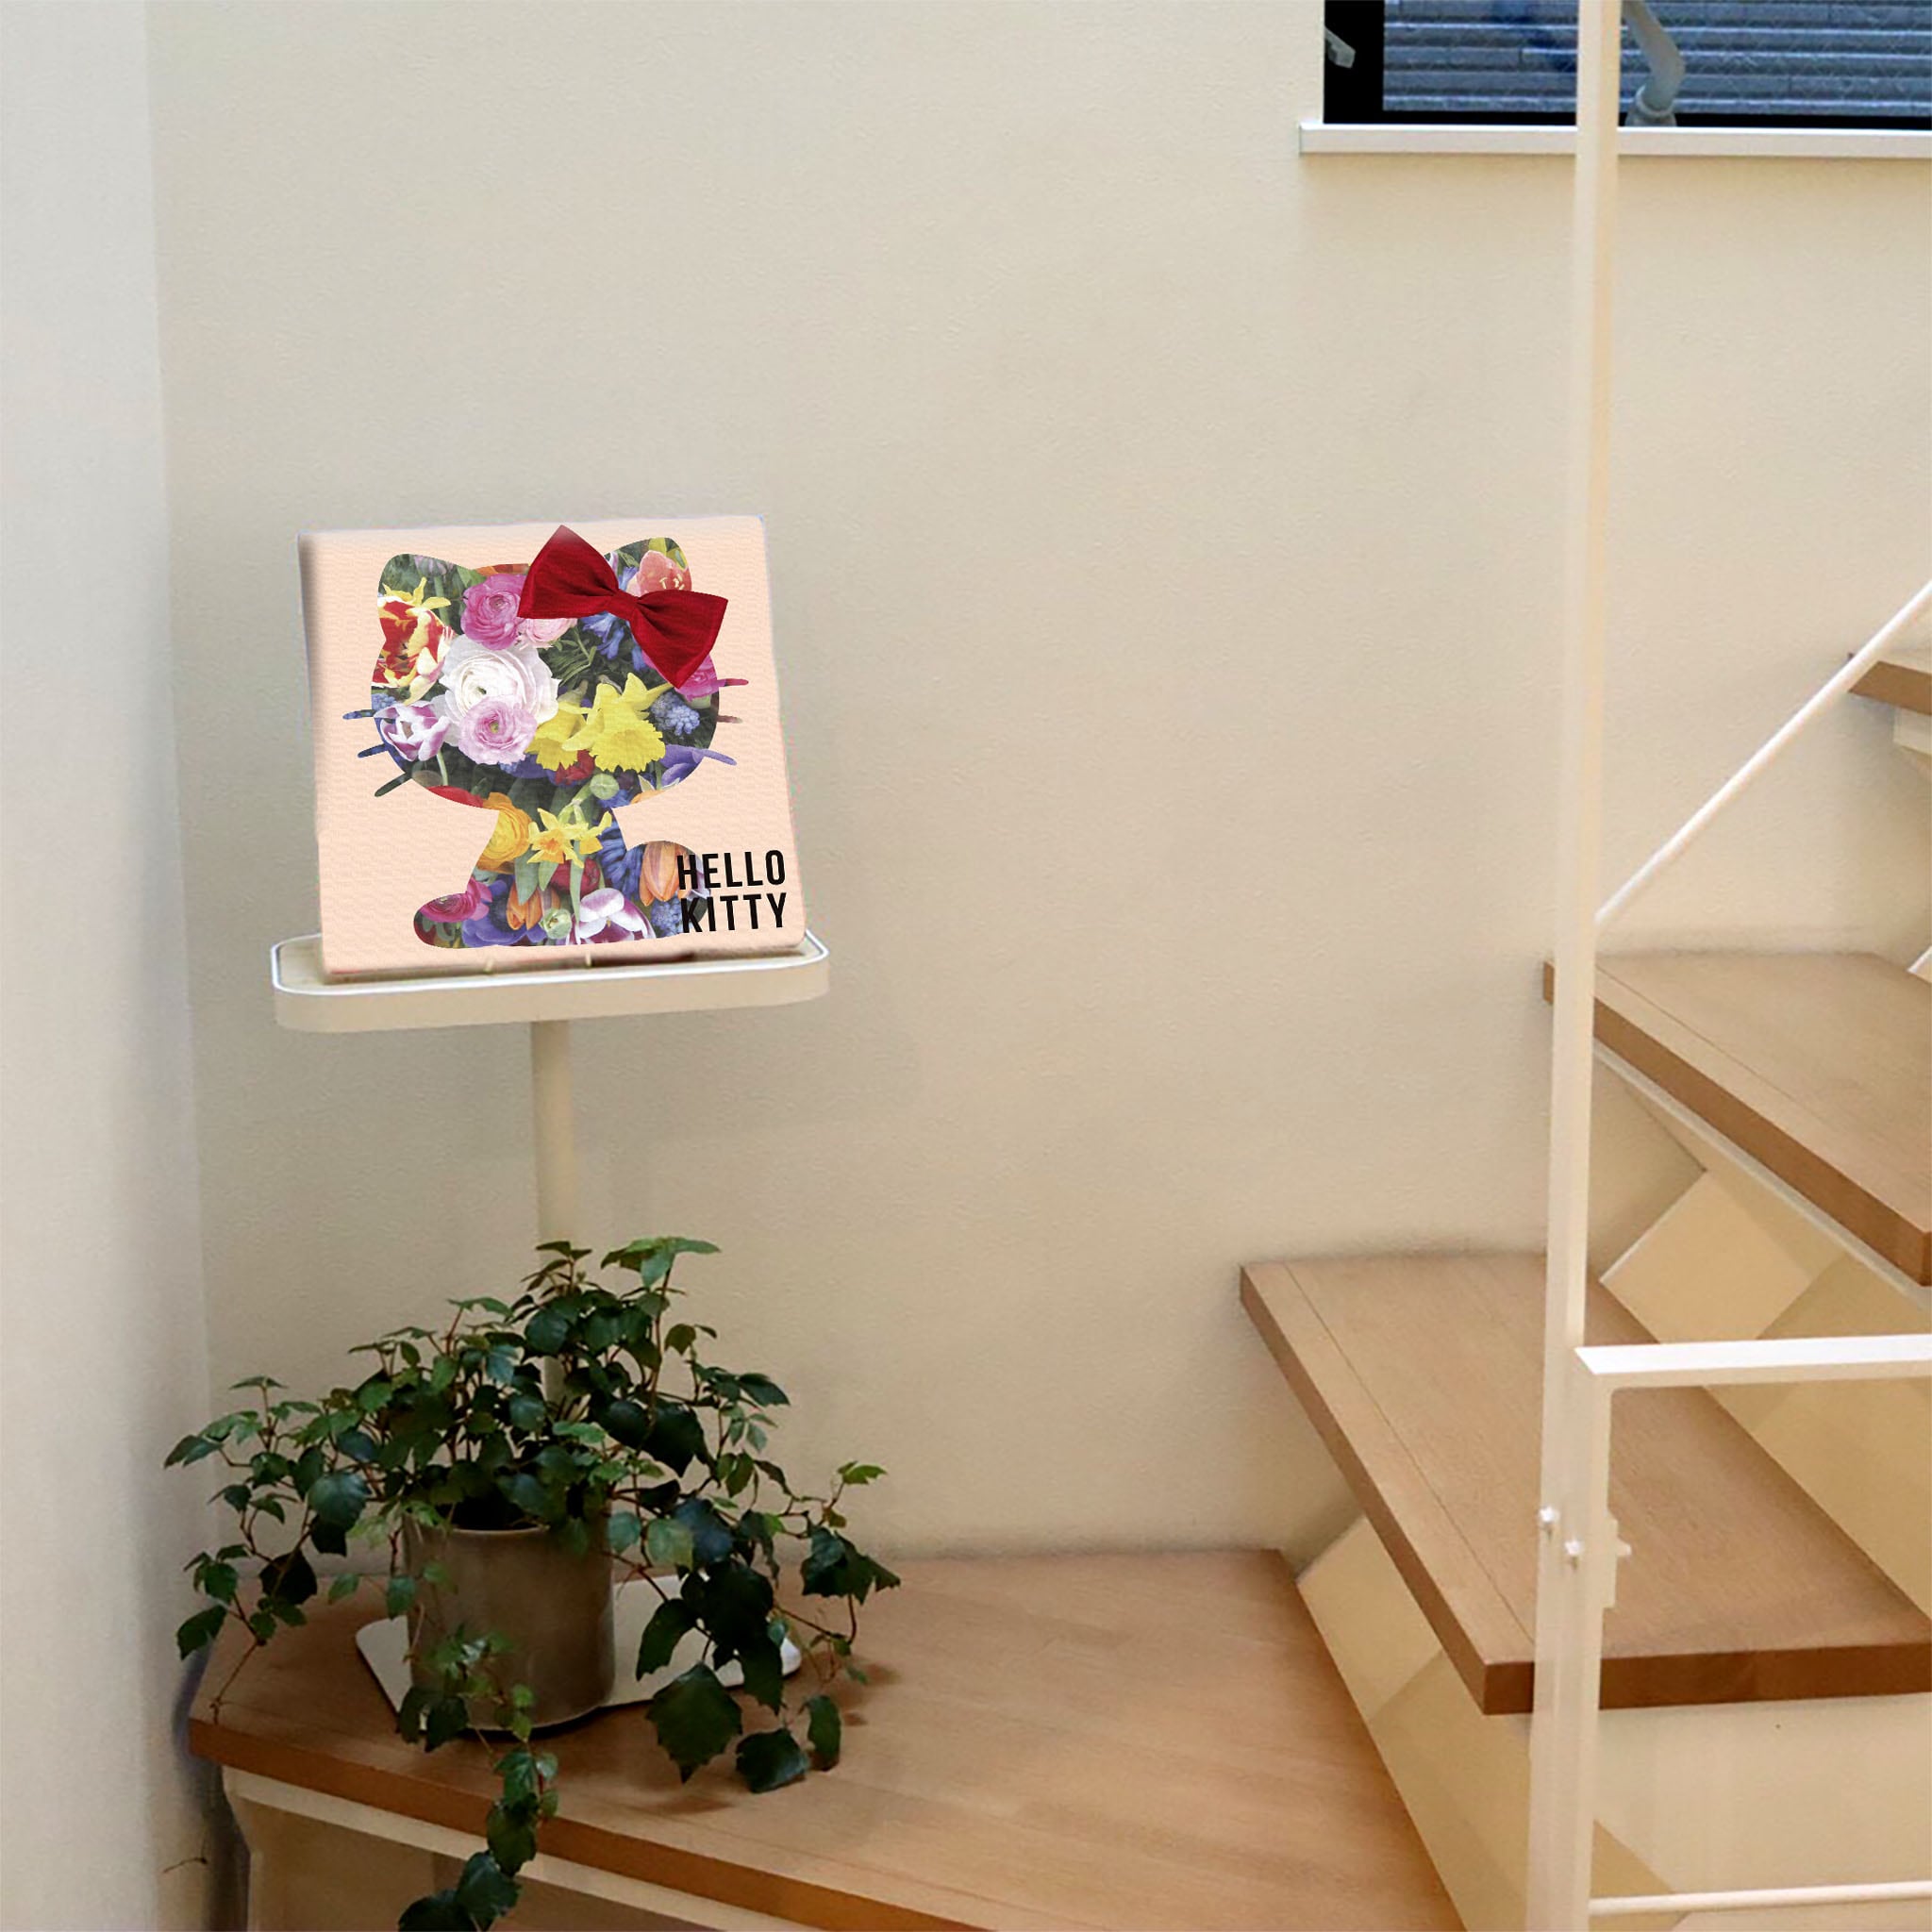 キティちゃんのアートボード インテリア アート 雑貨 kty-0010 – ArtDeli. アートパネル専門店